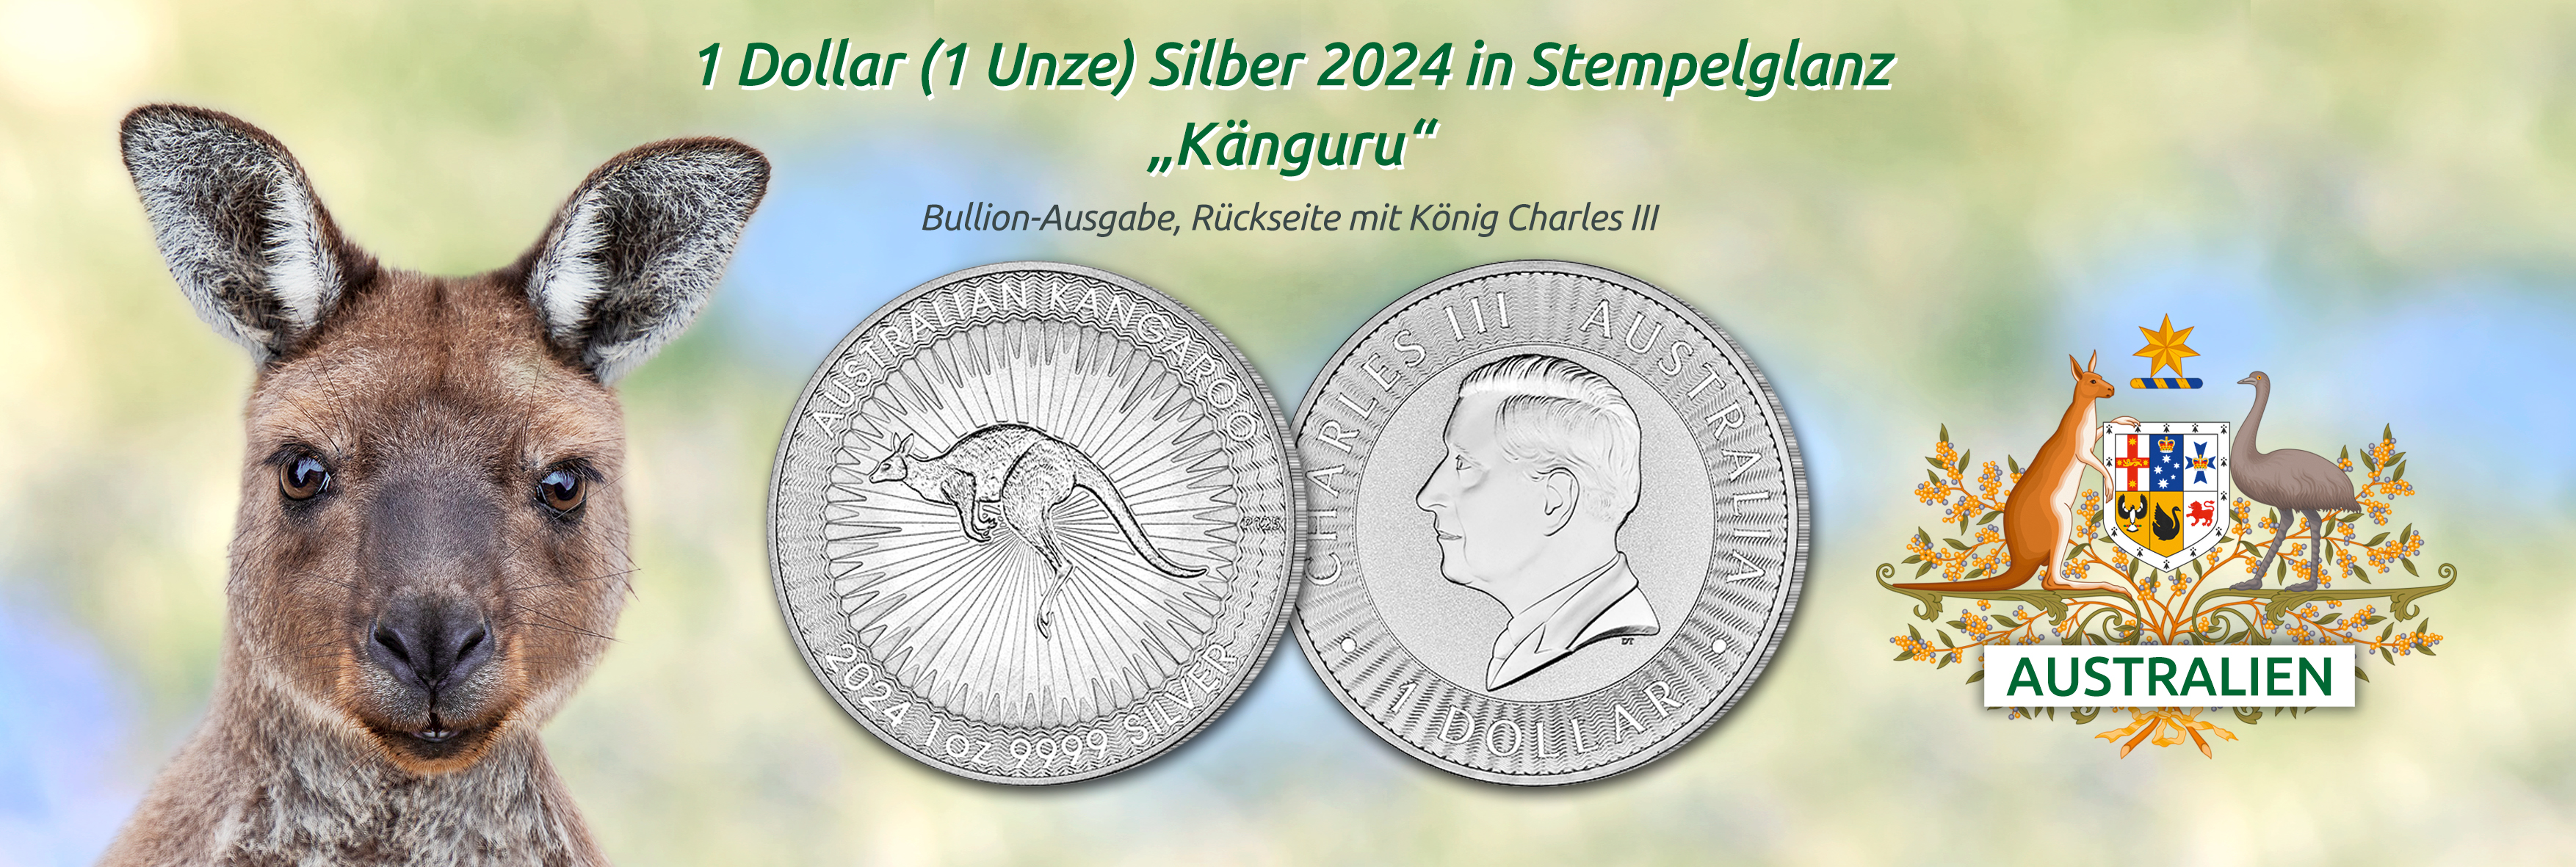 Australien - 1 Dollar Silbermünze 2024 in Stempelglanz, Känguru, 1 Unze Bullion-Ausgabe, Rückseite König Charles III.